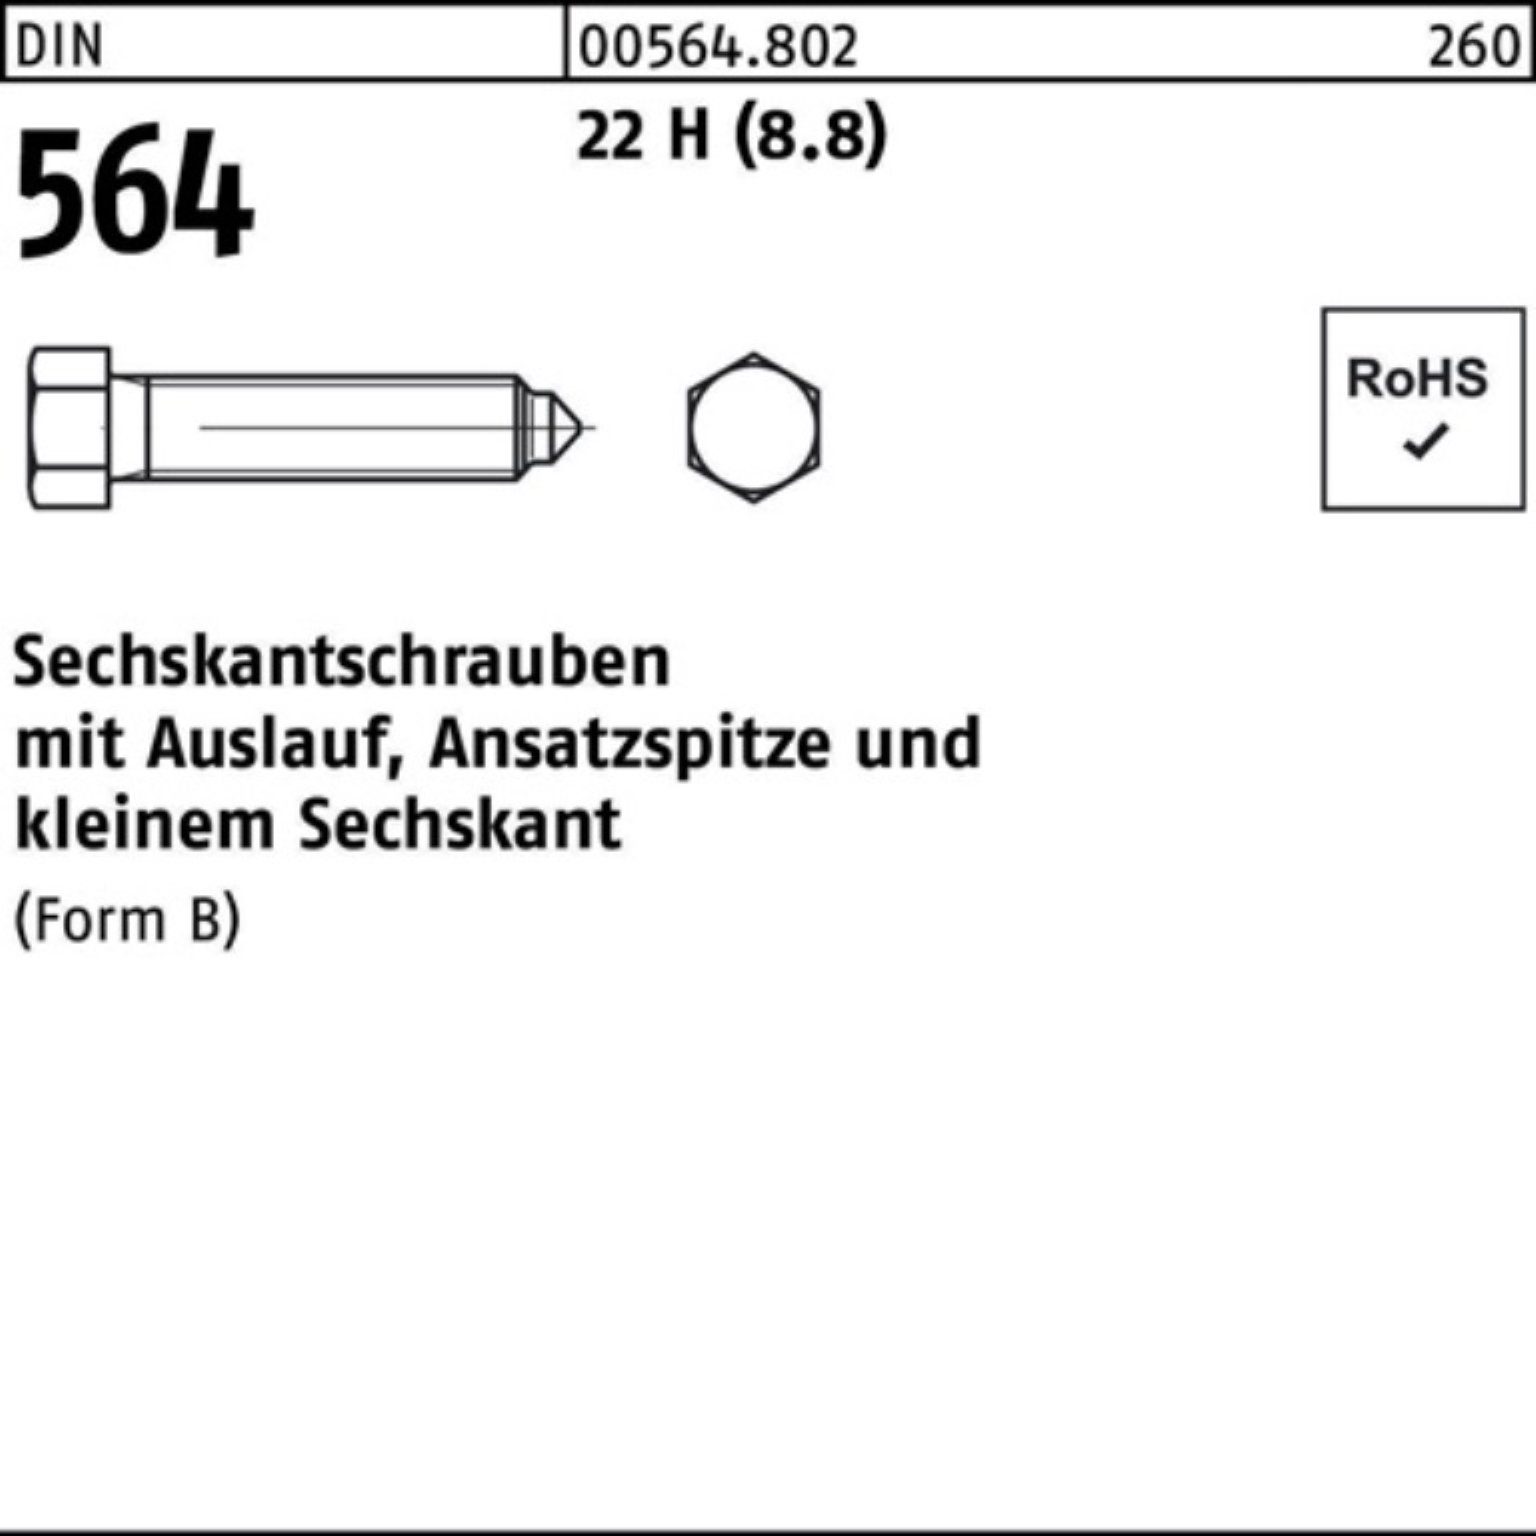 Reyher Sechskantschraube 100er Pack Sechskantschraube DIN 564 Ansatzspitze/Auslauf BM 8x 30 22